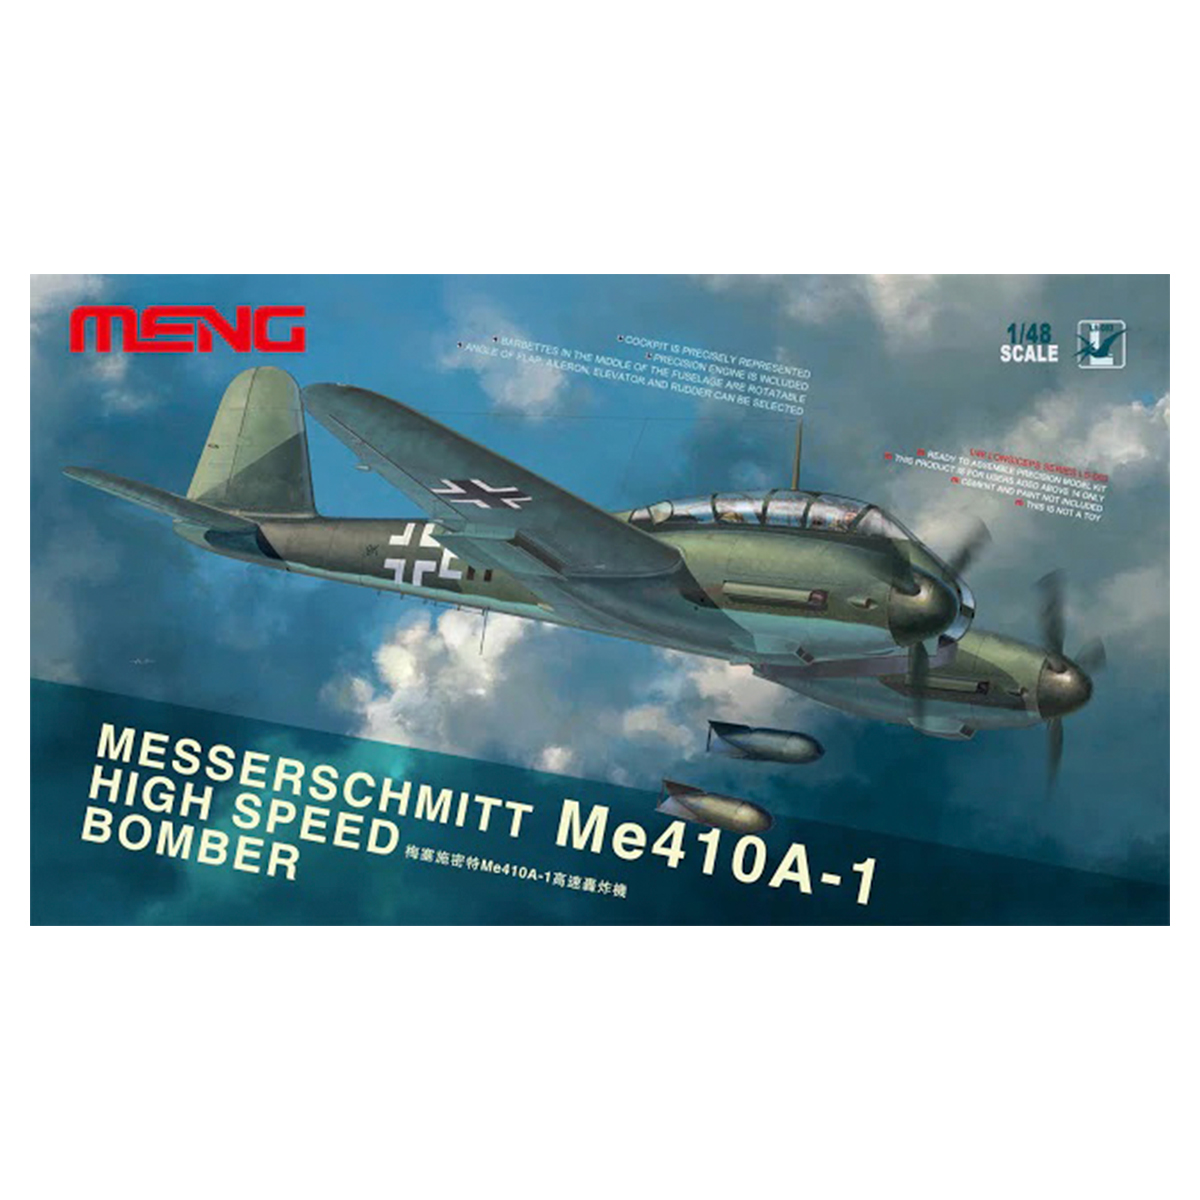 1/48 Messerschmitt Me 410A-1 High Speed Bomber